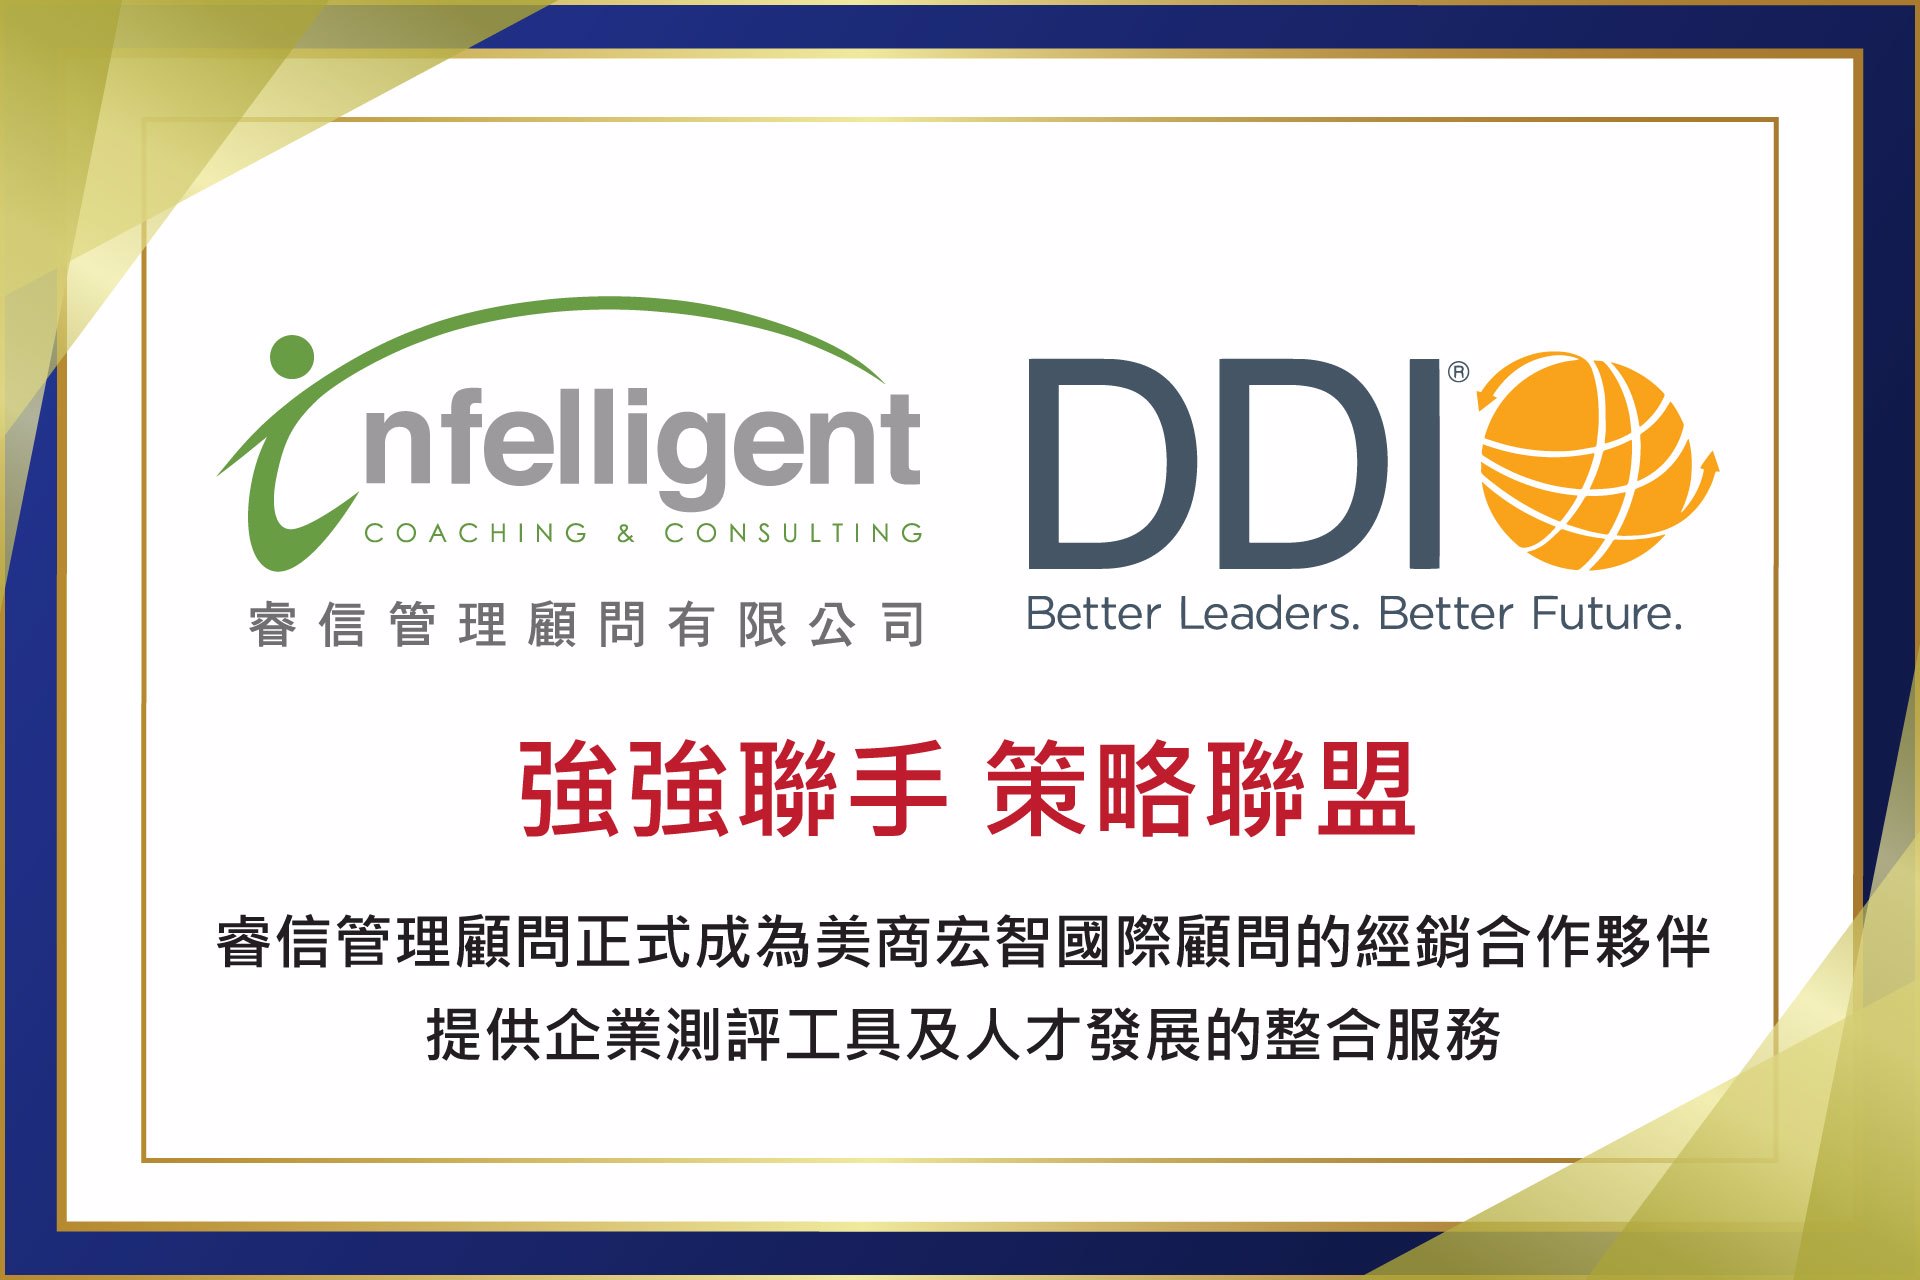 DDI partnership